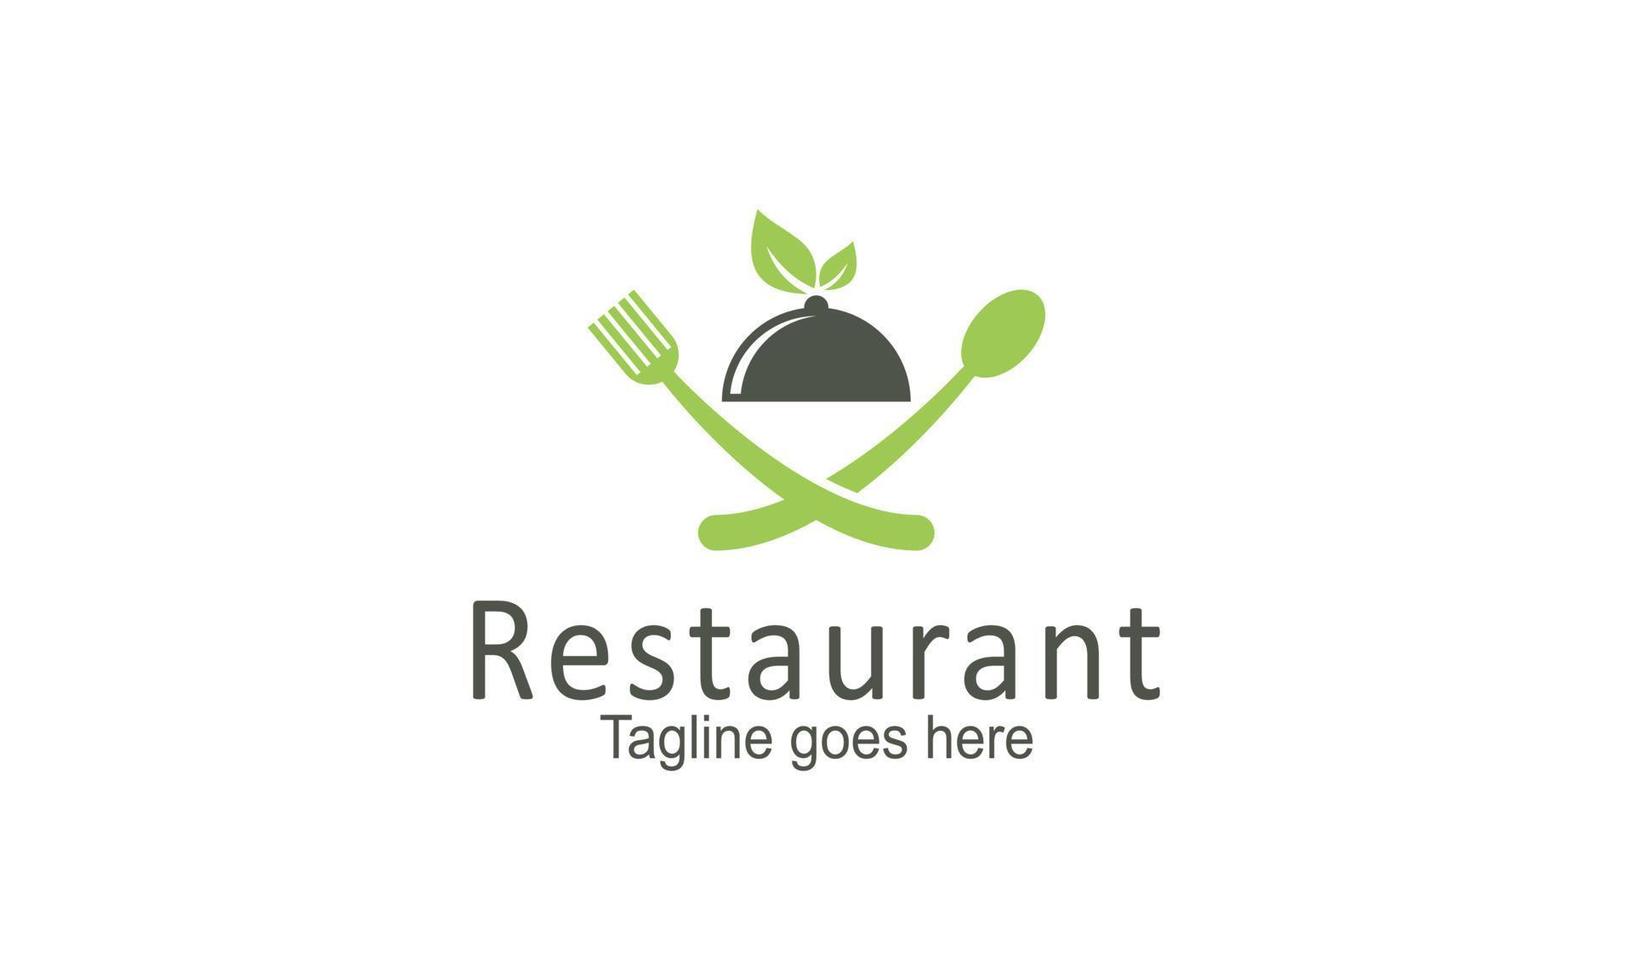 vettore del modello di progettazione del logo del ristorante